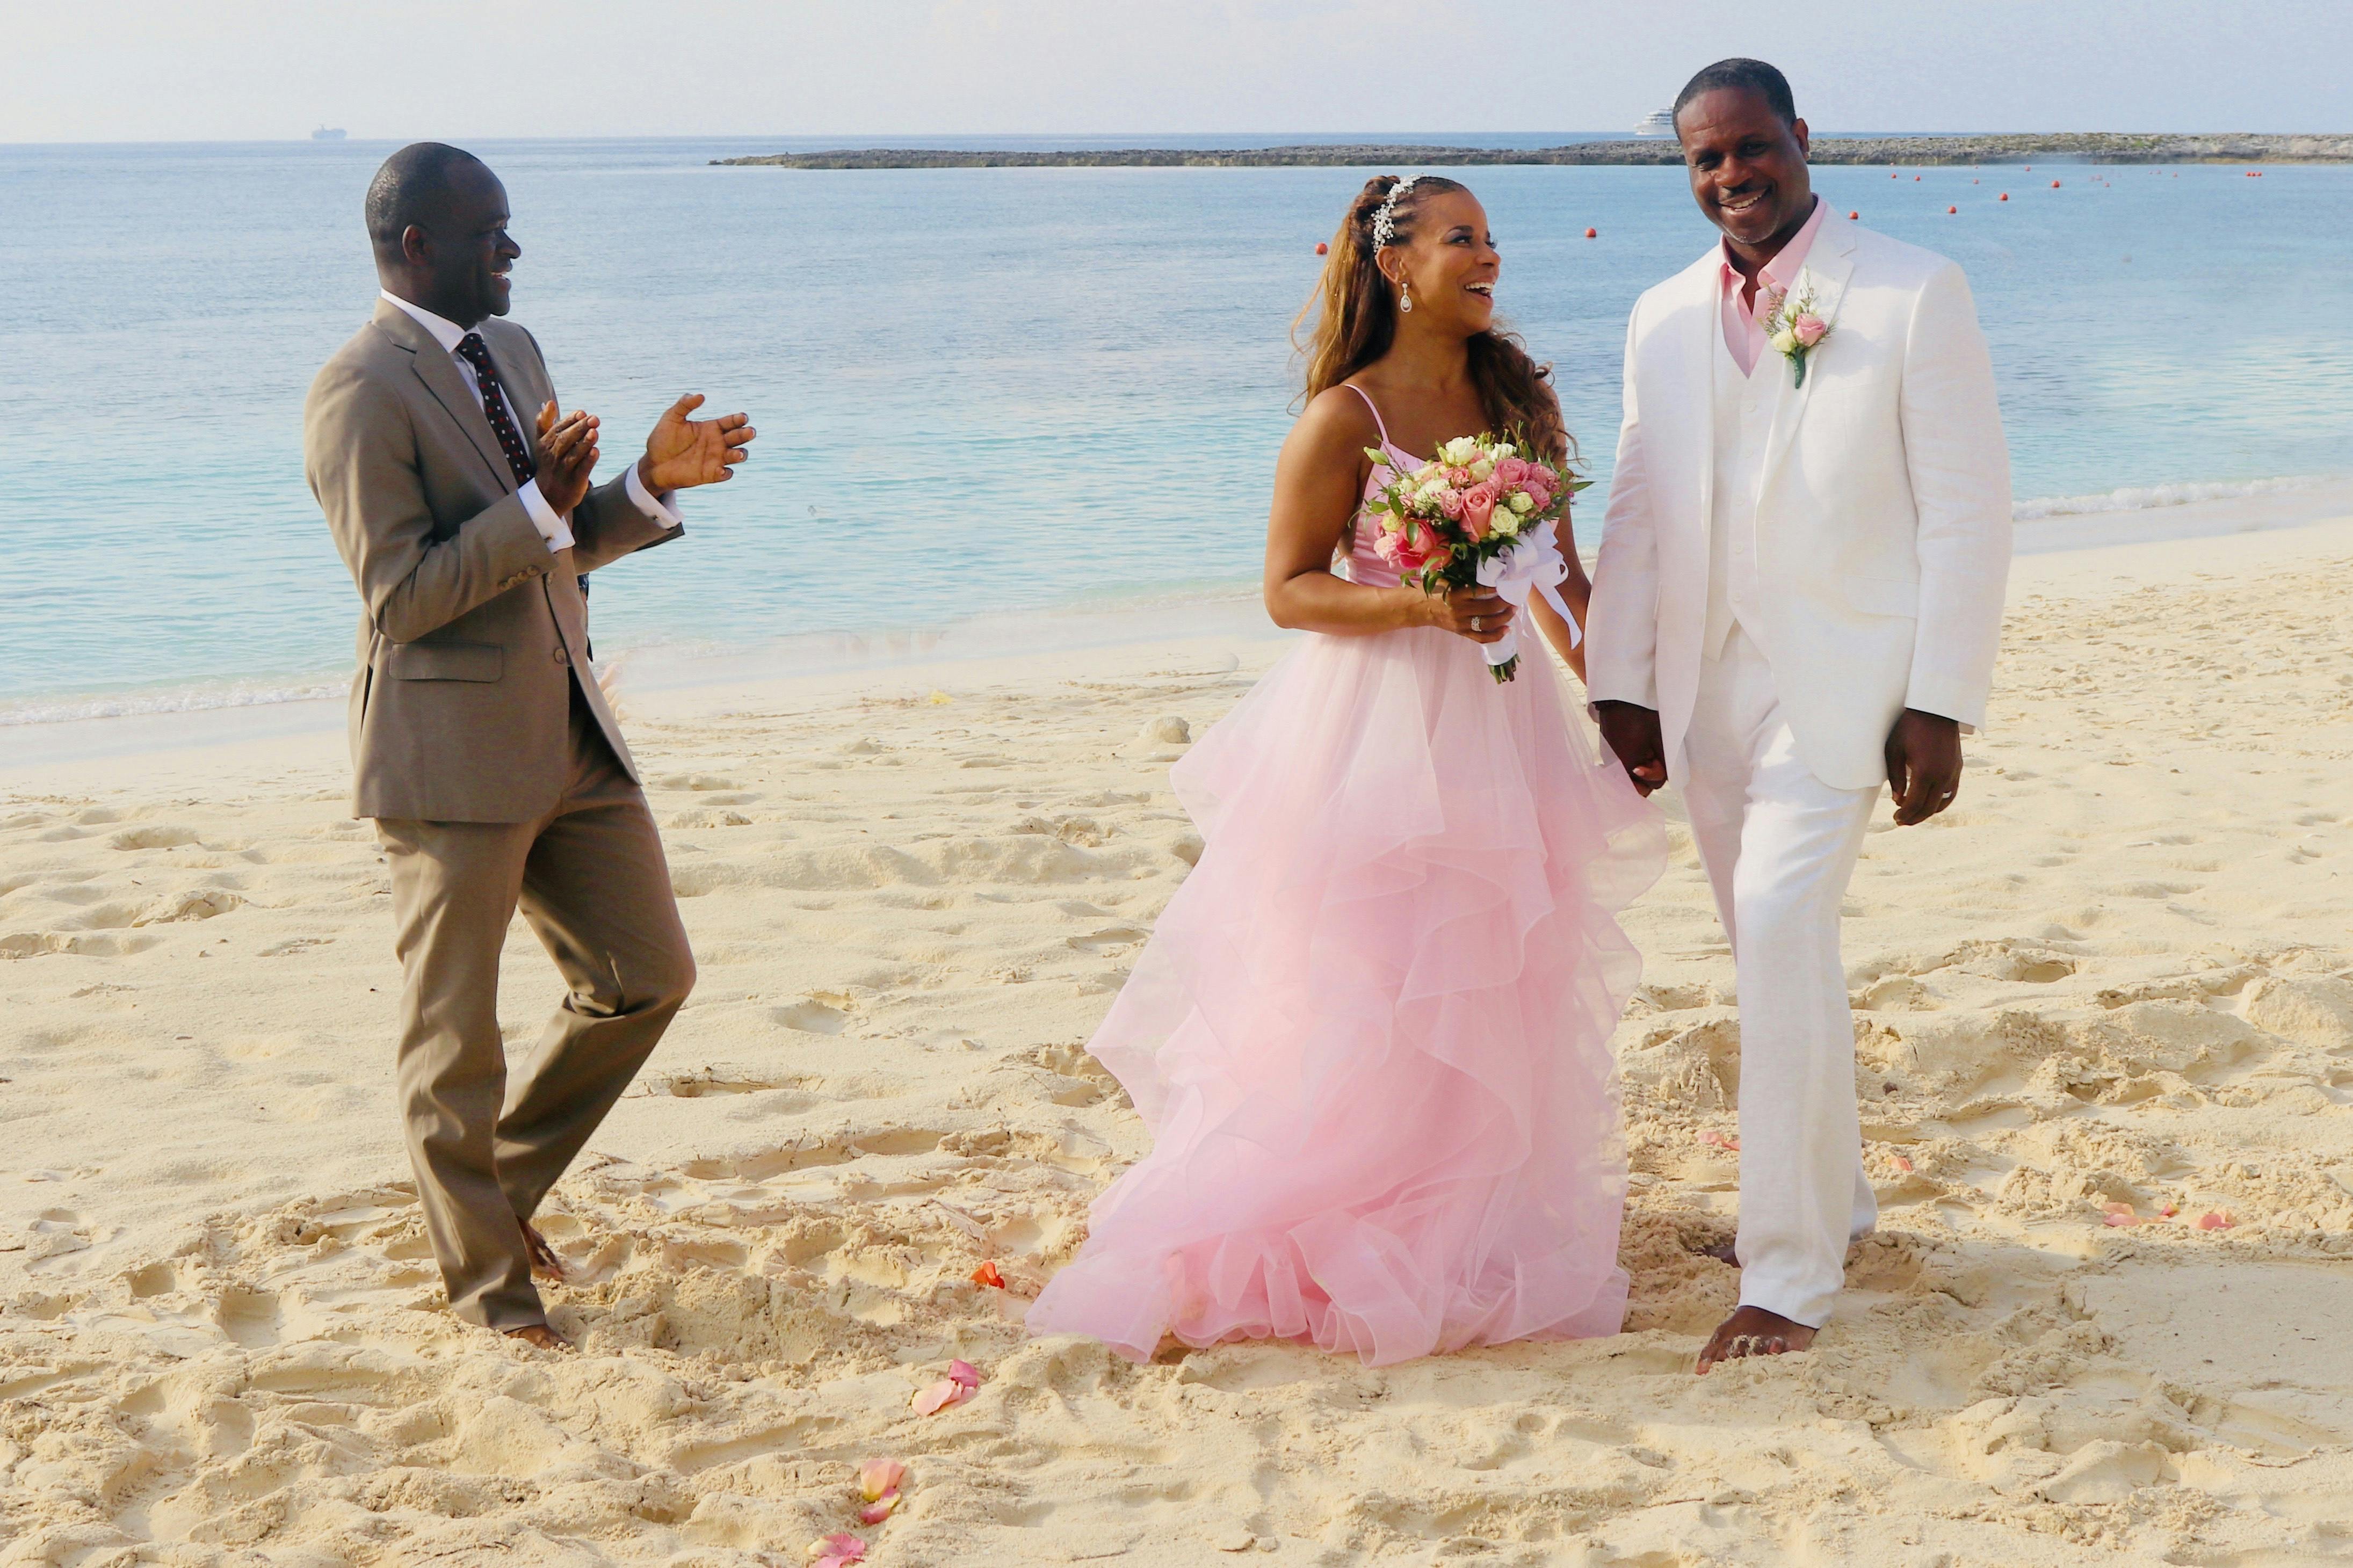 Bahamas marriage officer Glenn Ferguson